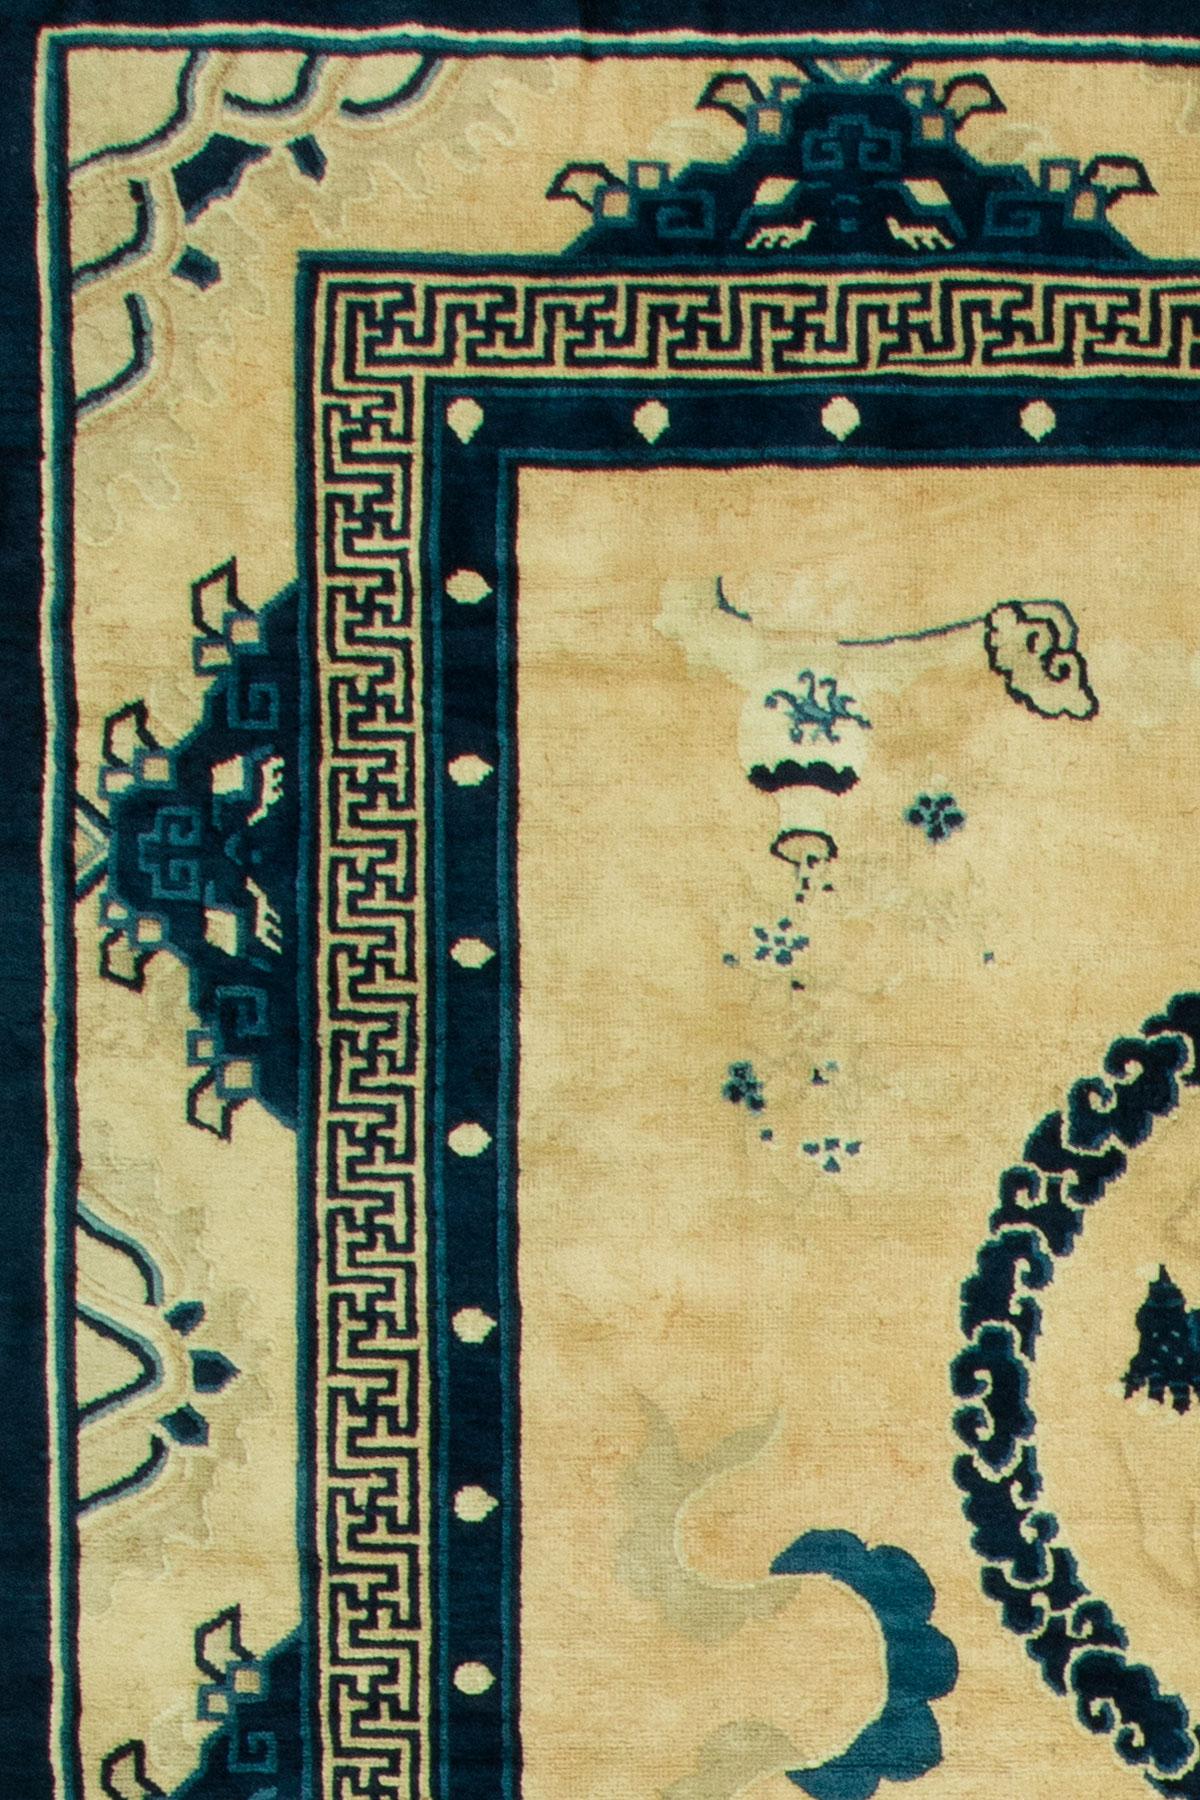 Très rare tapis chinois ancien de Pékin avec des dragons picturaux répartis en 5 motifs circulaires ronds sur un fond couleur os. Une qualité exceptionnelle également.

Les dragons chinois sont un symbole important et puissant dans le monde